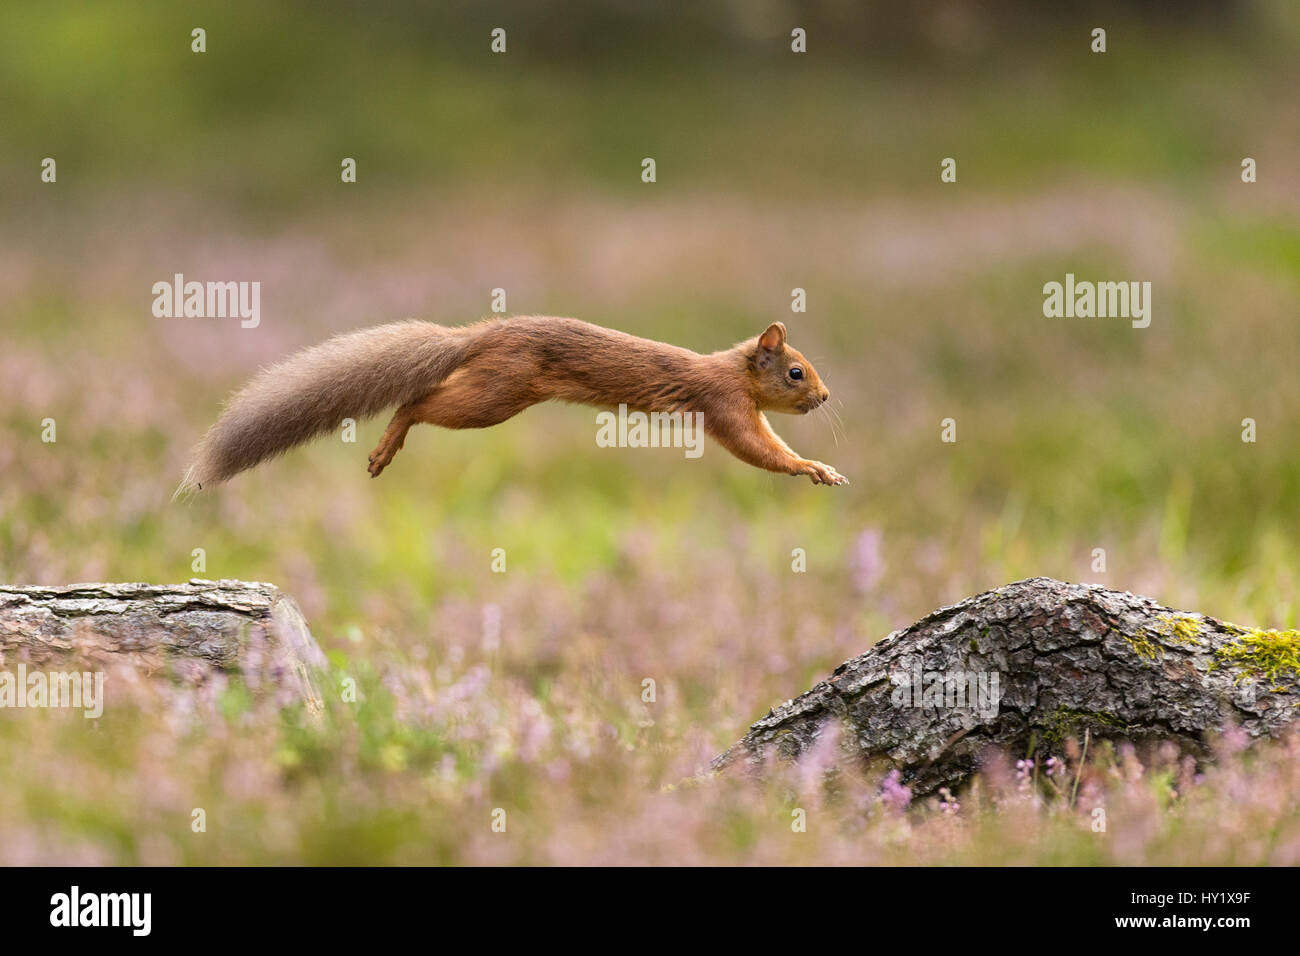 Eichhörnchen (Sciurus Vulgaris) im Sommer Mantel springen zwischen umgestürzte Baumstämme Schottland, UK. September. Stockfoto